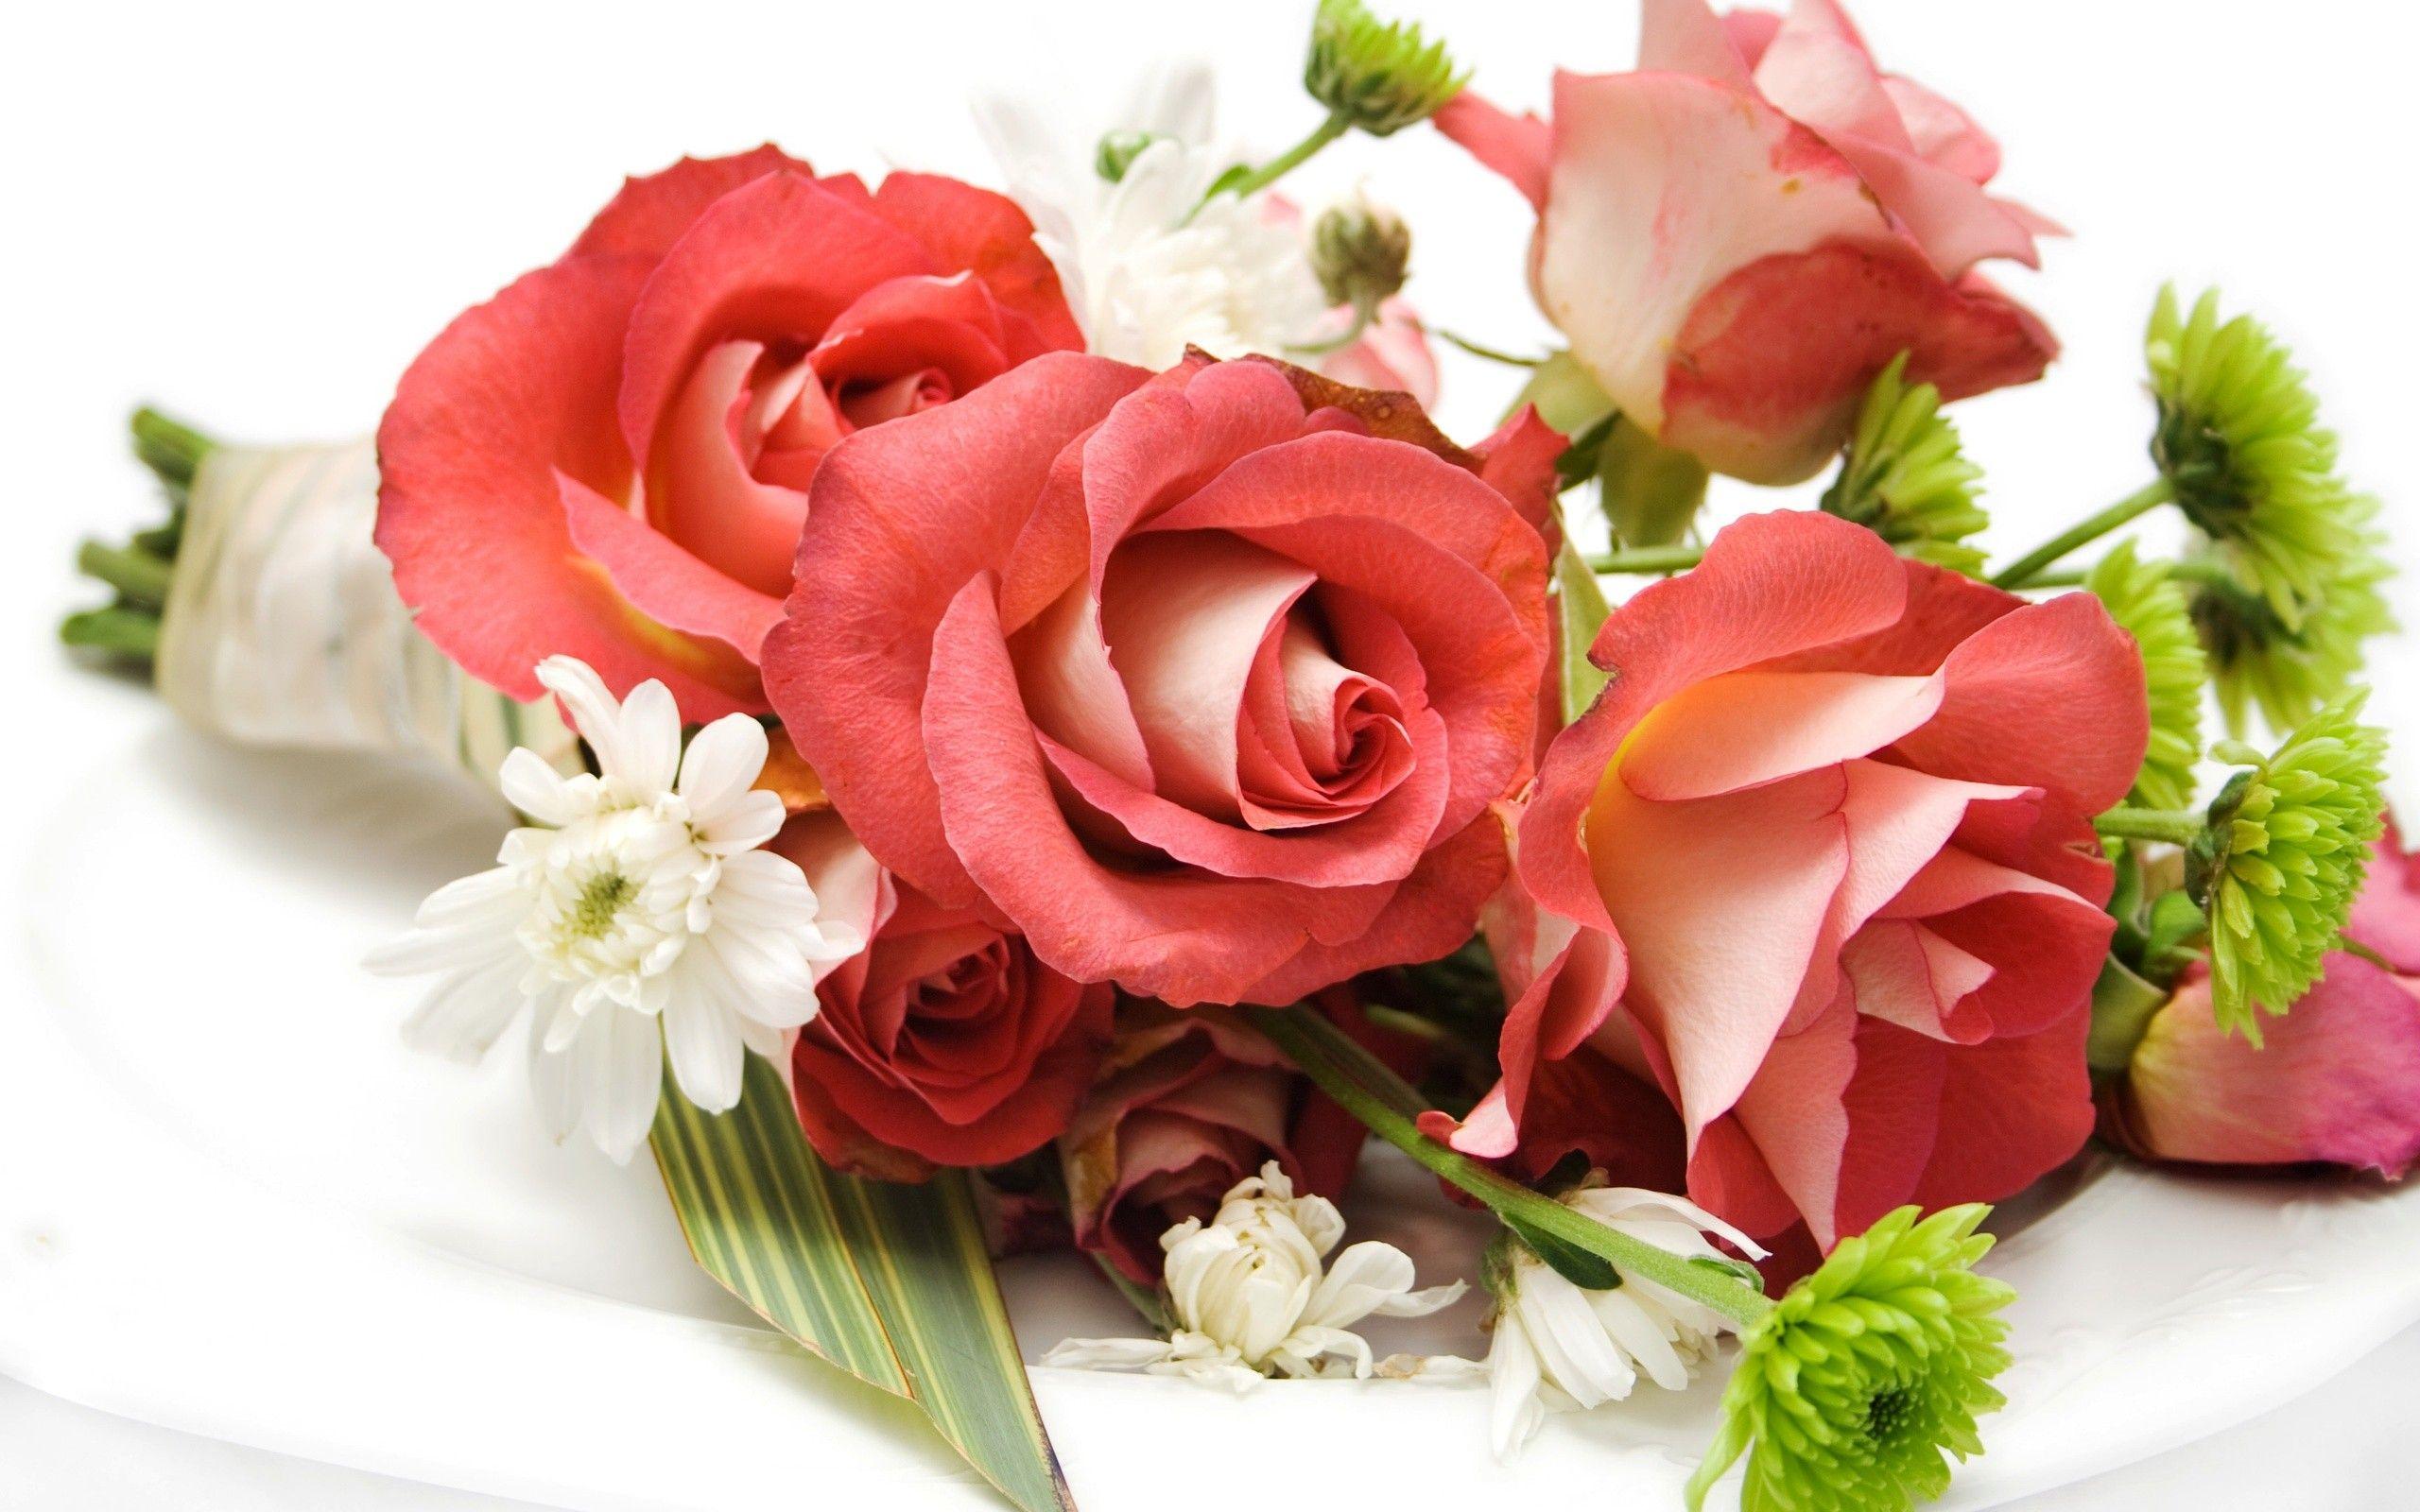 Flowers: Nice Fresh Roses Lovely Rose HD Flower Wallpaper For Mobile